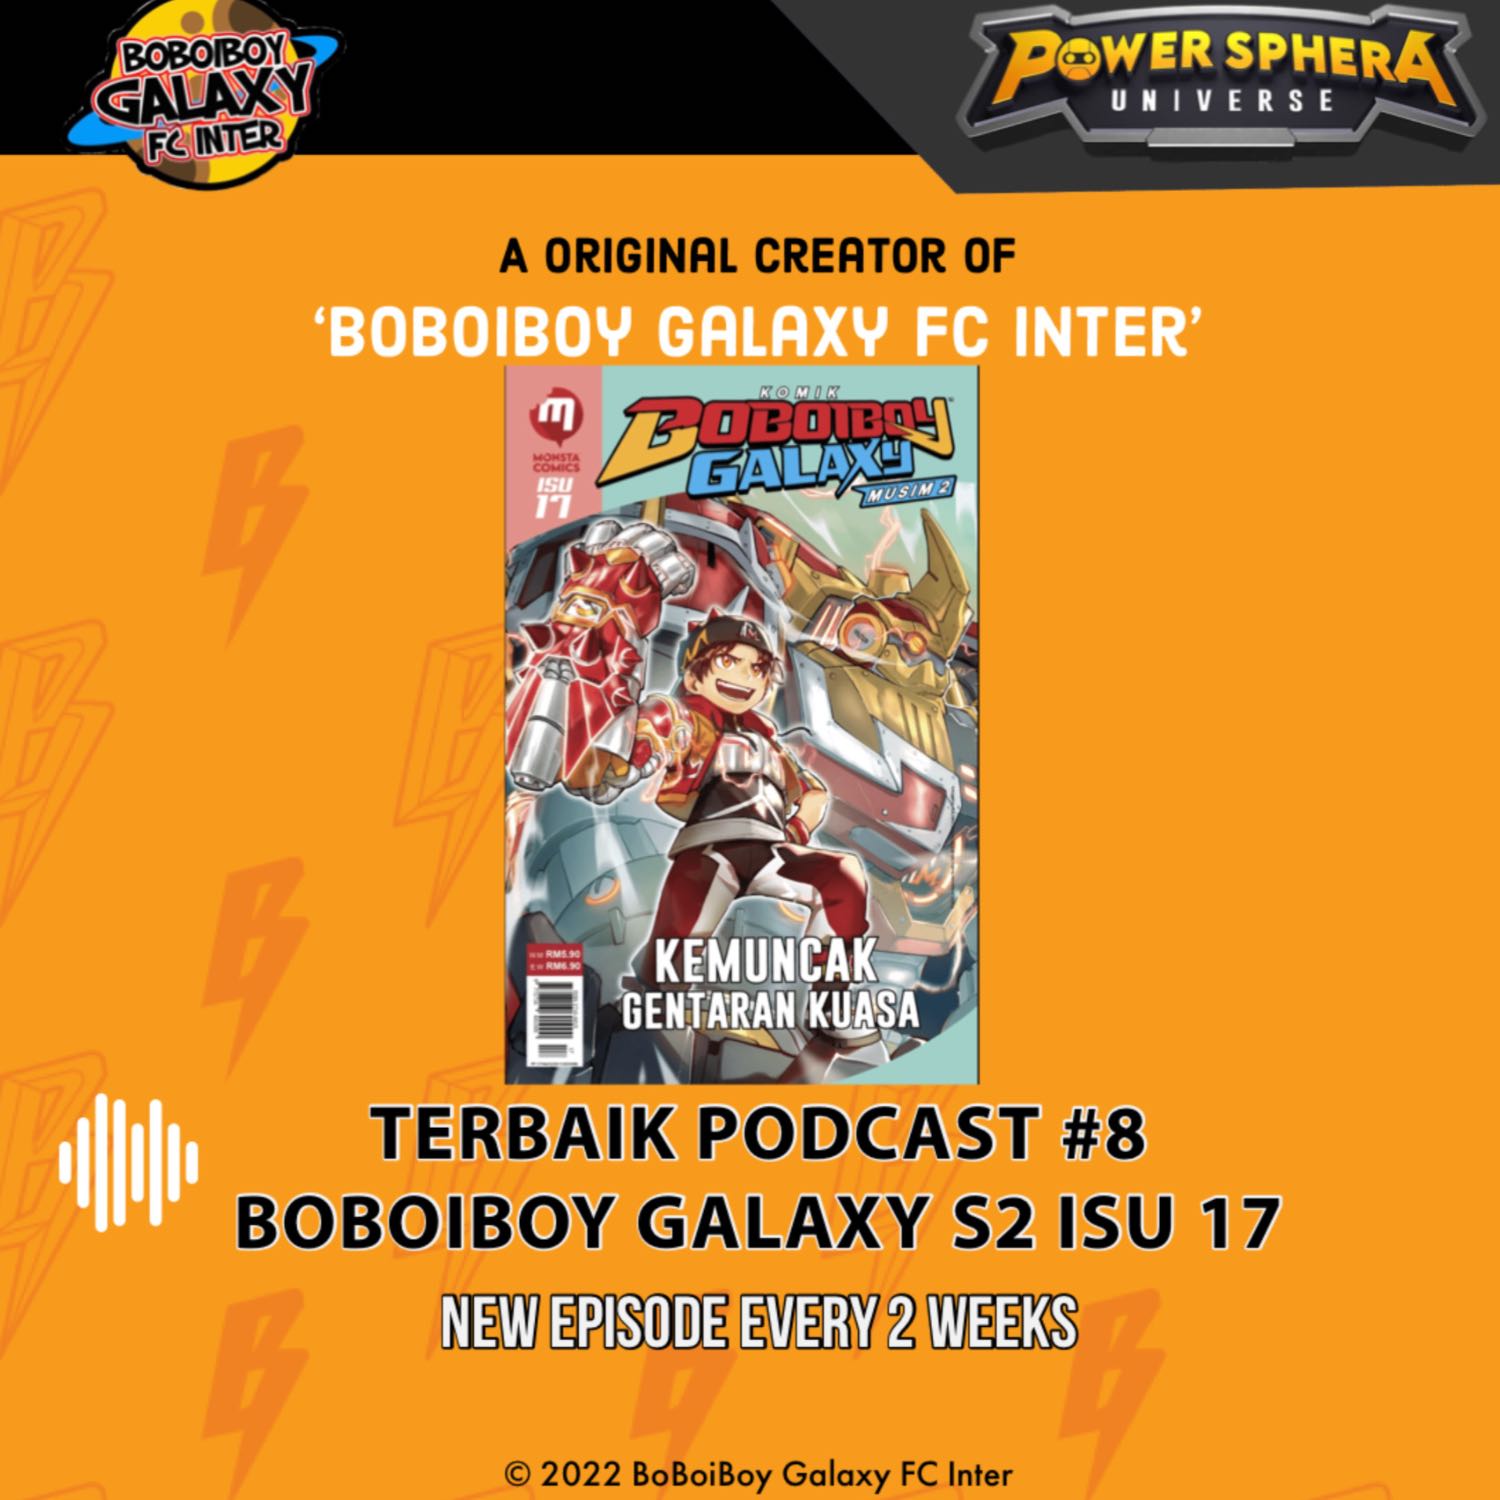 Terbaik Podcast #8 - BoBoiBoy Galaxy Season 2 isu 17 Spoiler